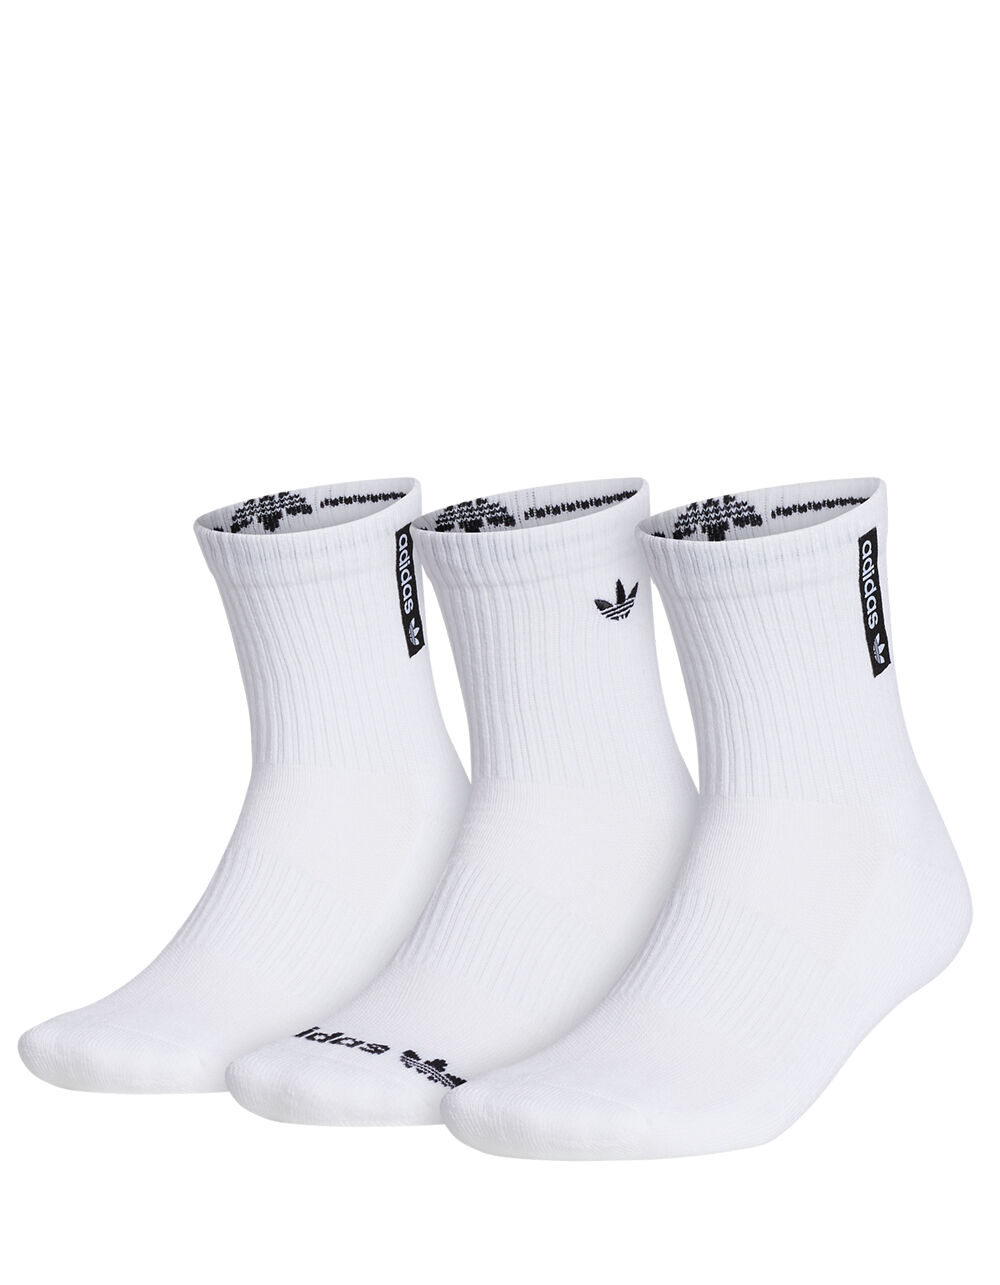 ADIDAS Originals 3 Pack Trefoil Mens Crew Socks - WHITE | Tillys